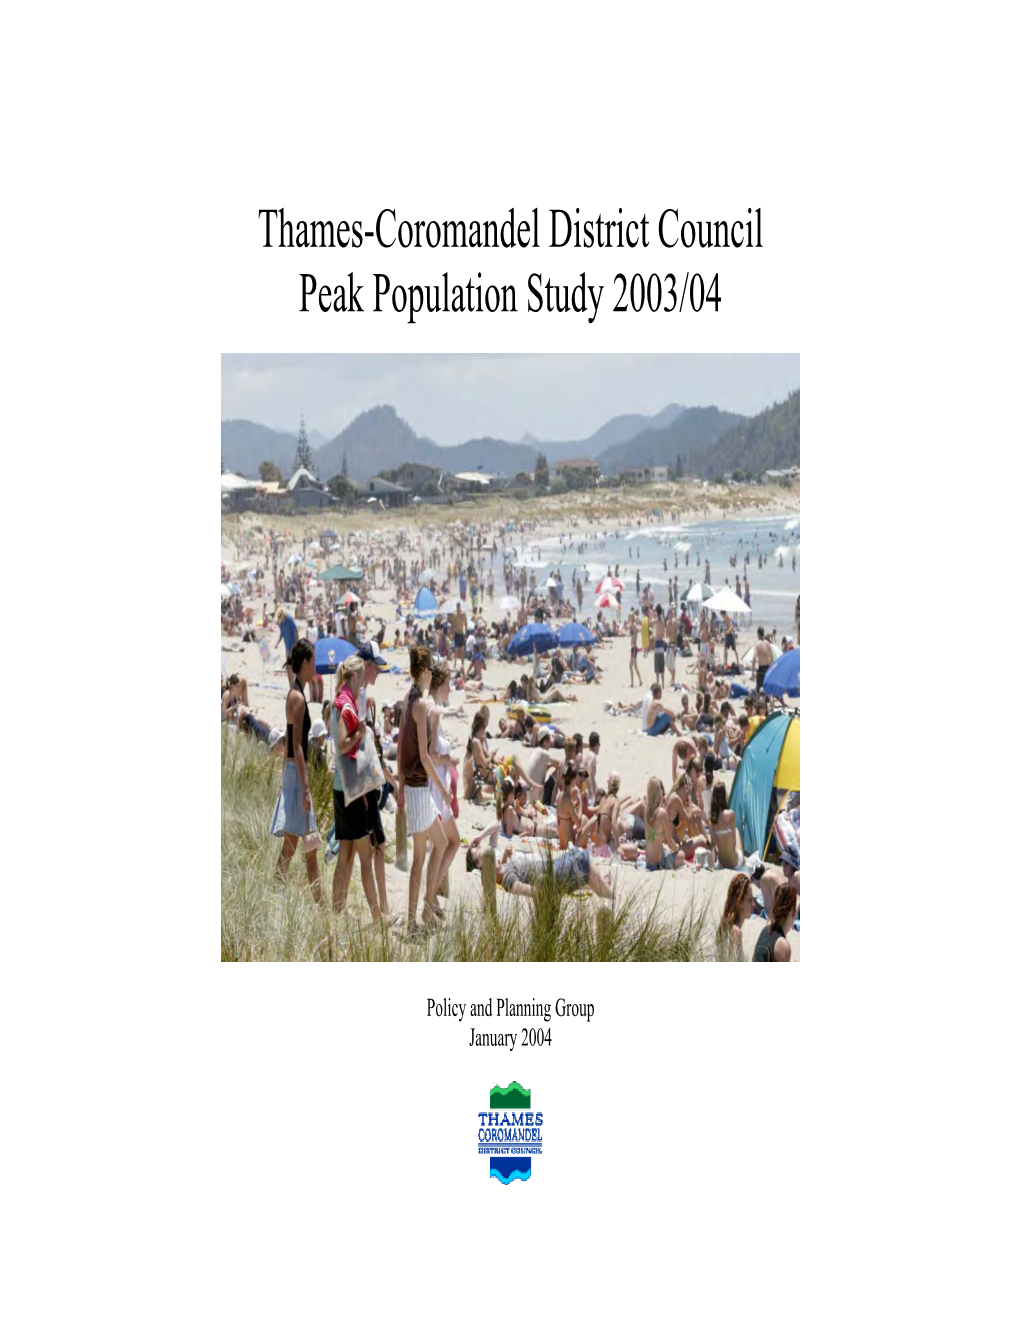 Thames-Coromandel District Council Peak Population Study 2003/04